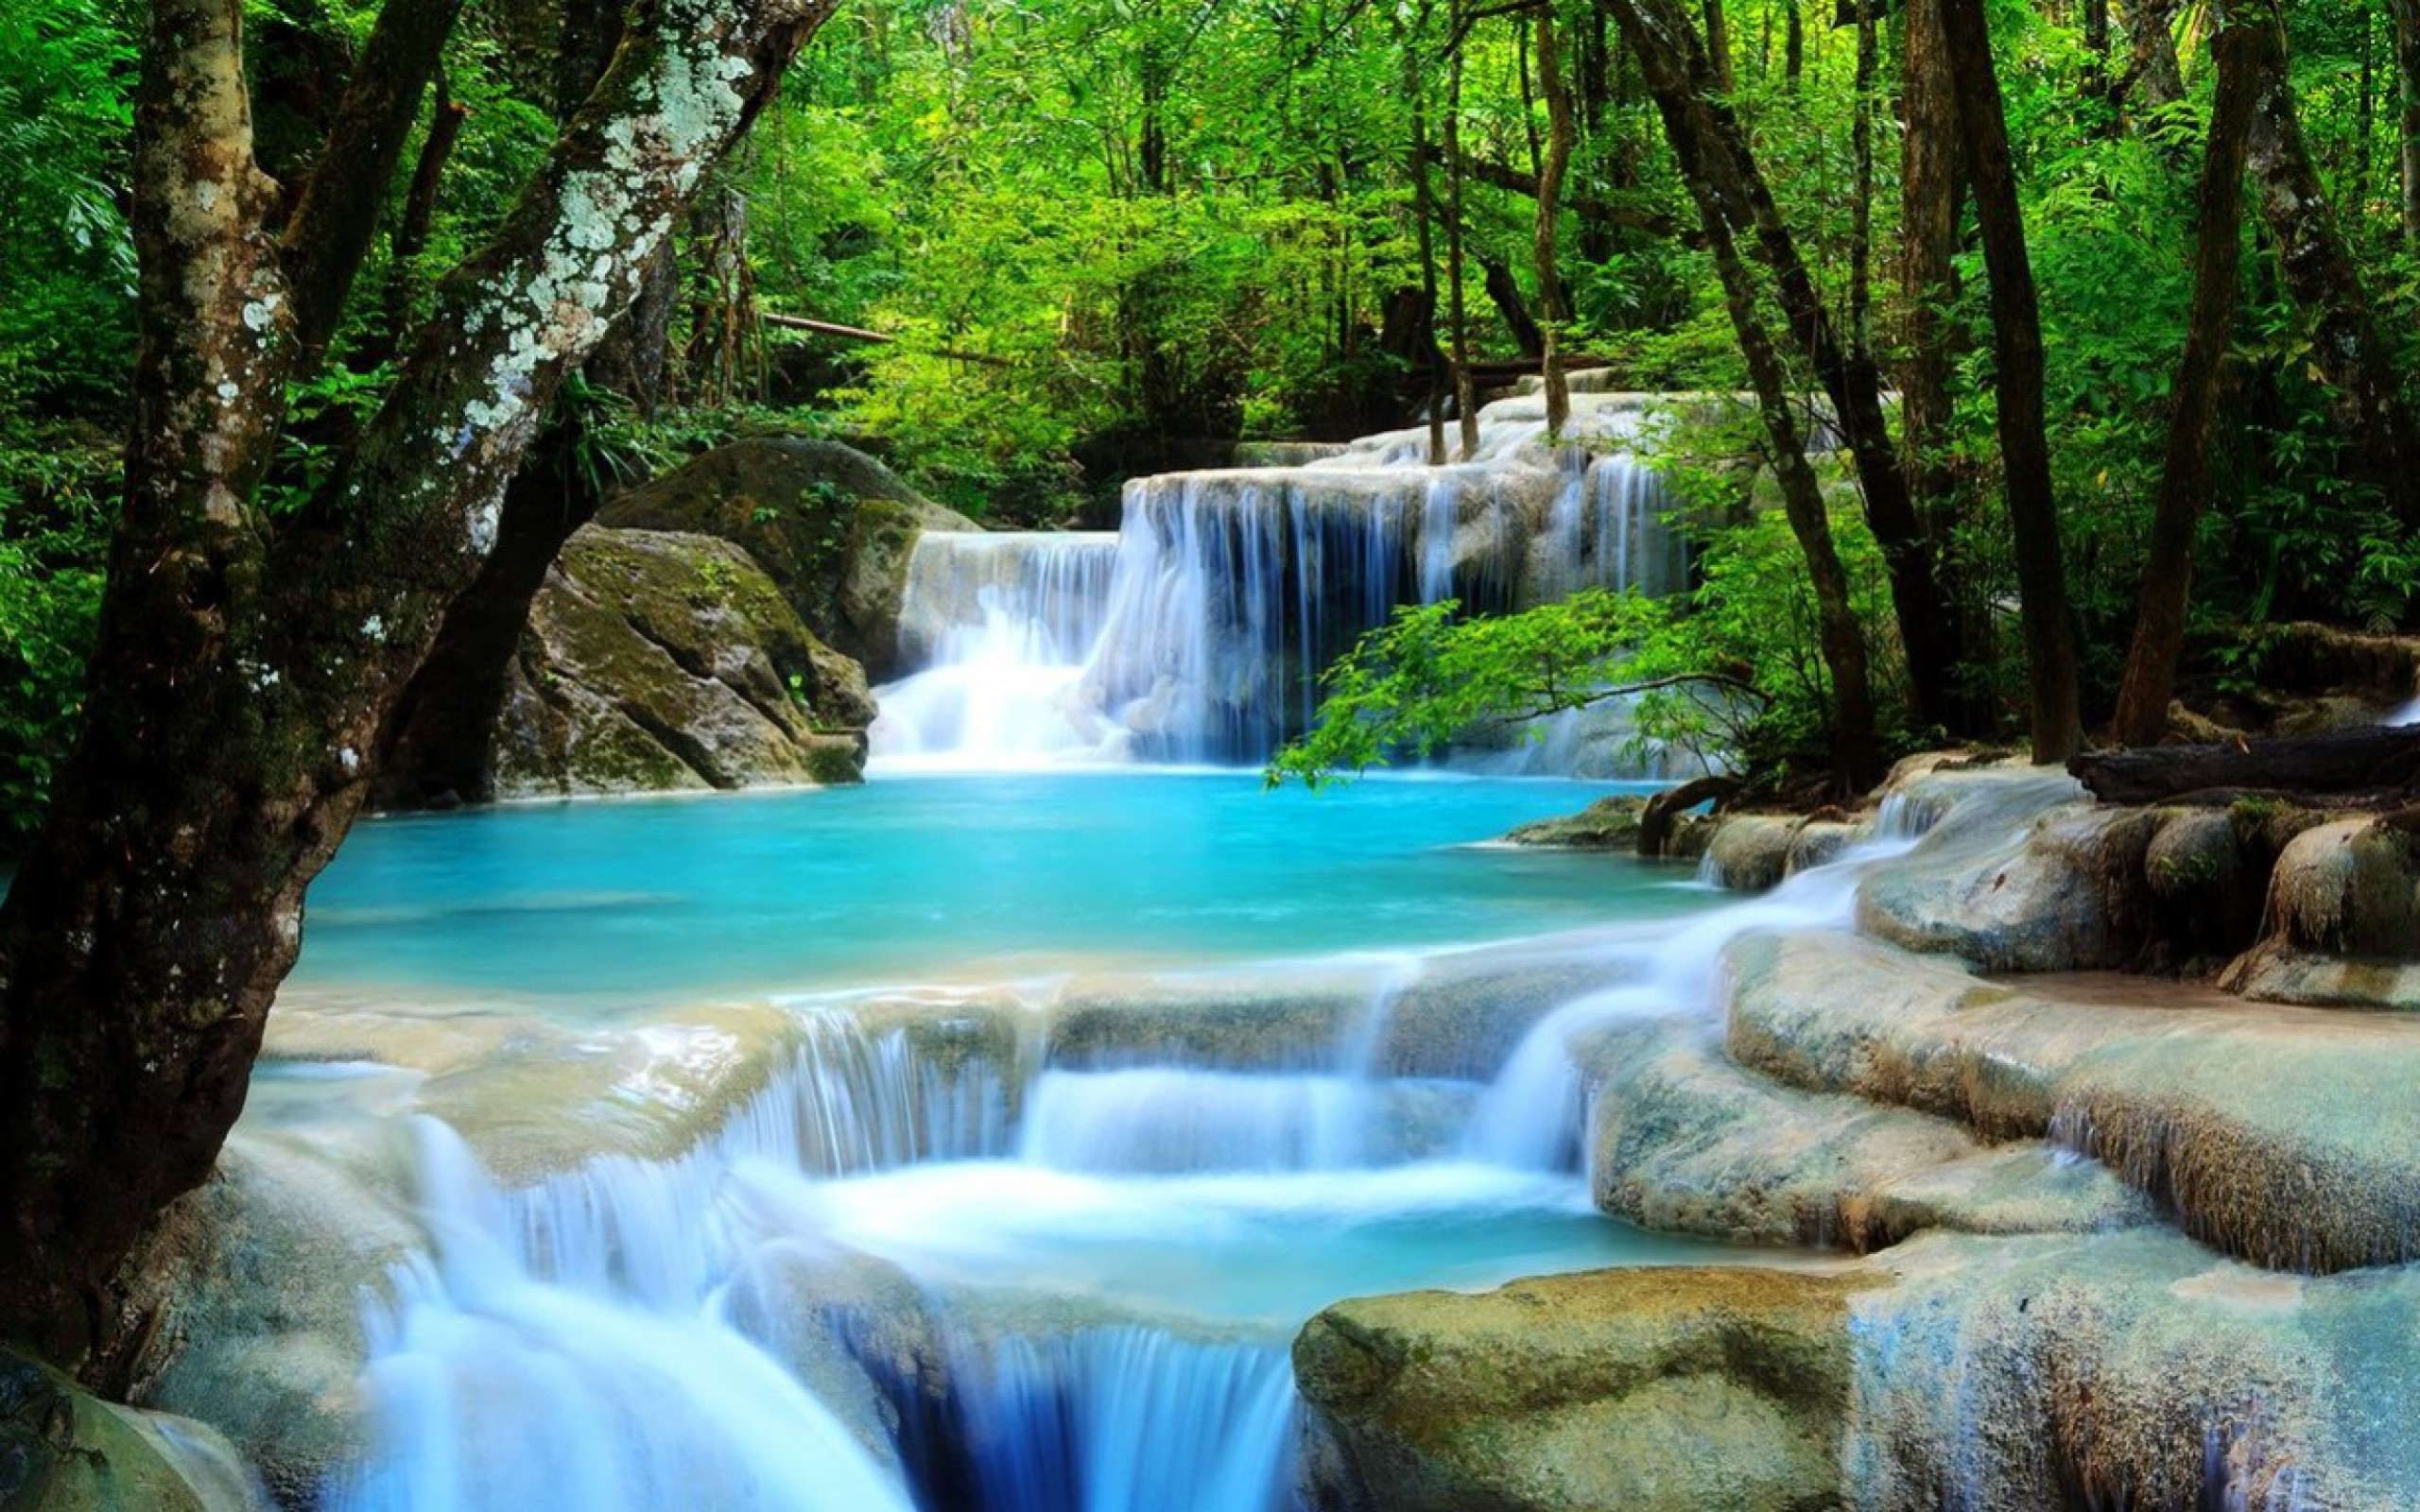 Bạn đam mê thiên nhiên và trải nghiệm những địa điểm tuyệt đẹp? Hình ảnh về thác nước với những dòng nước chảy xiết cùng hình ảnh rực rỡ như một bức tranh sơn dầu sẽ khiến bạn ôm ấp tình yêu với tự nhiên và chụp ảnh nghệ thuật của riêng mình.